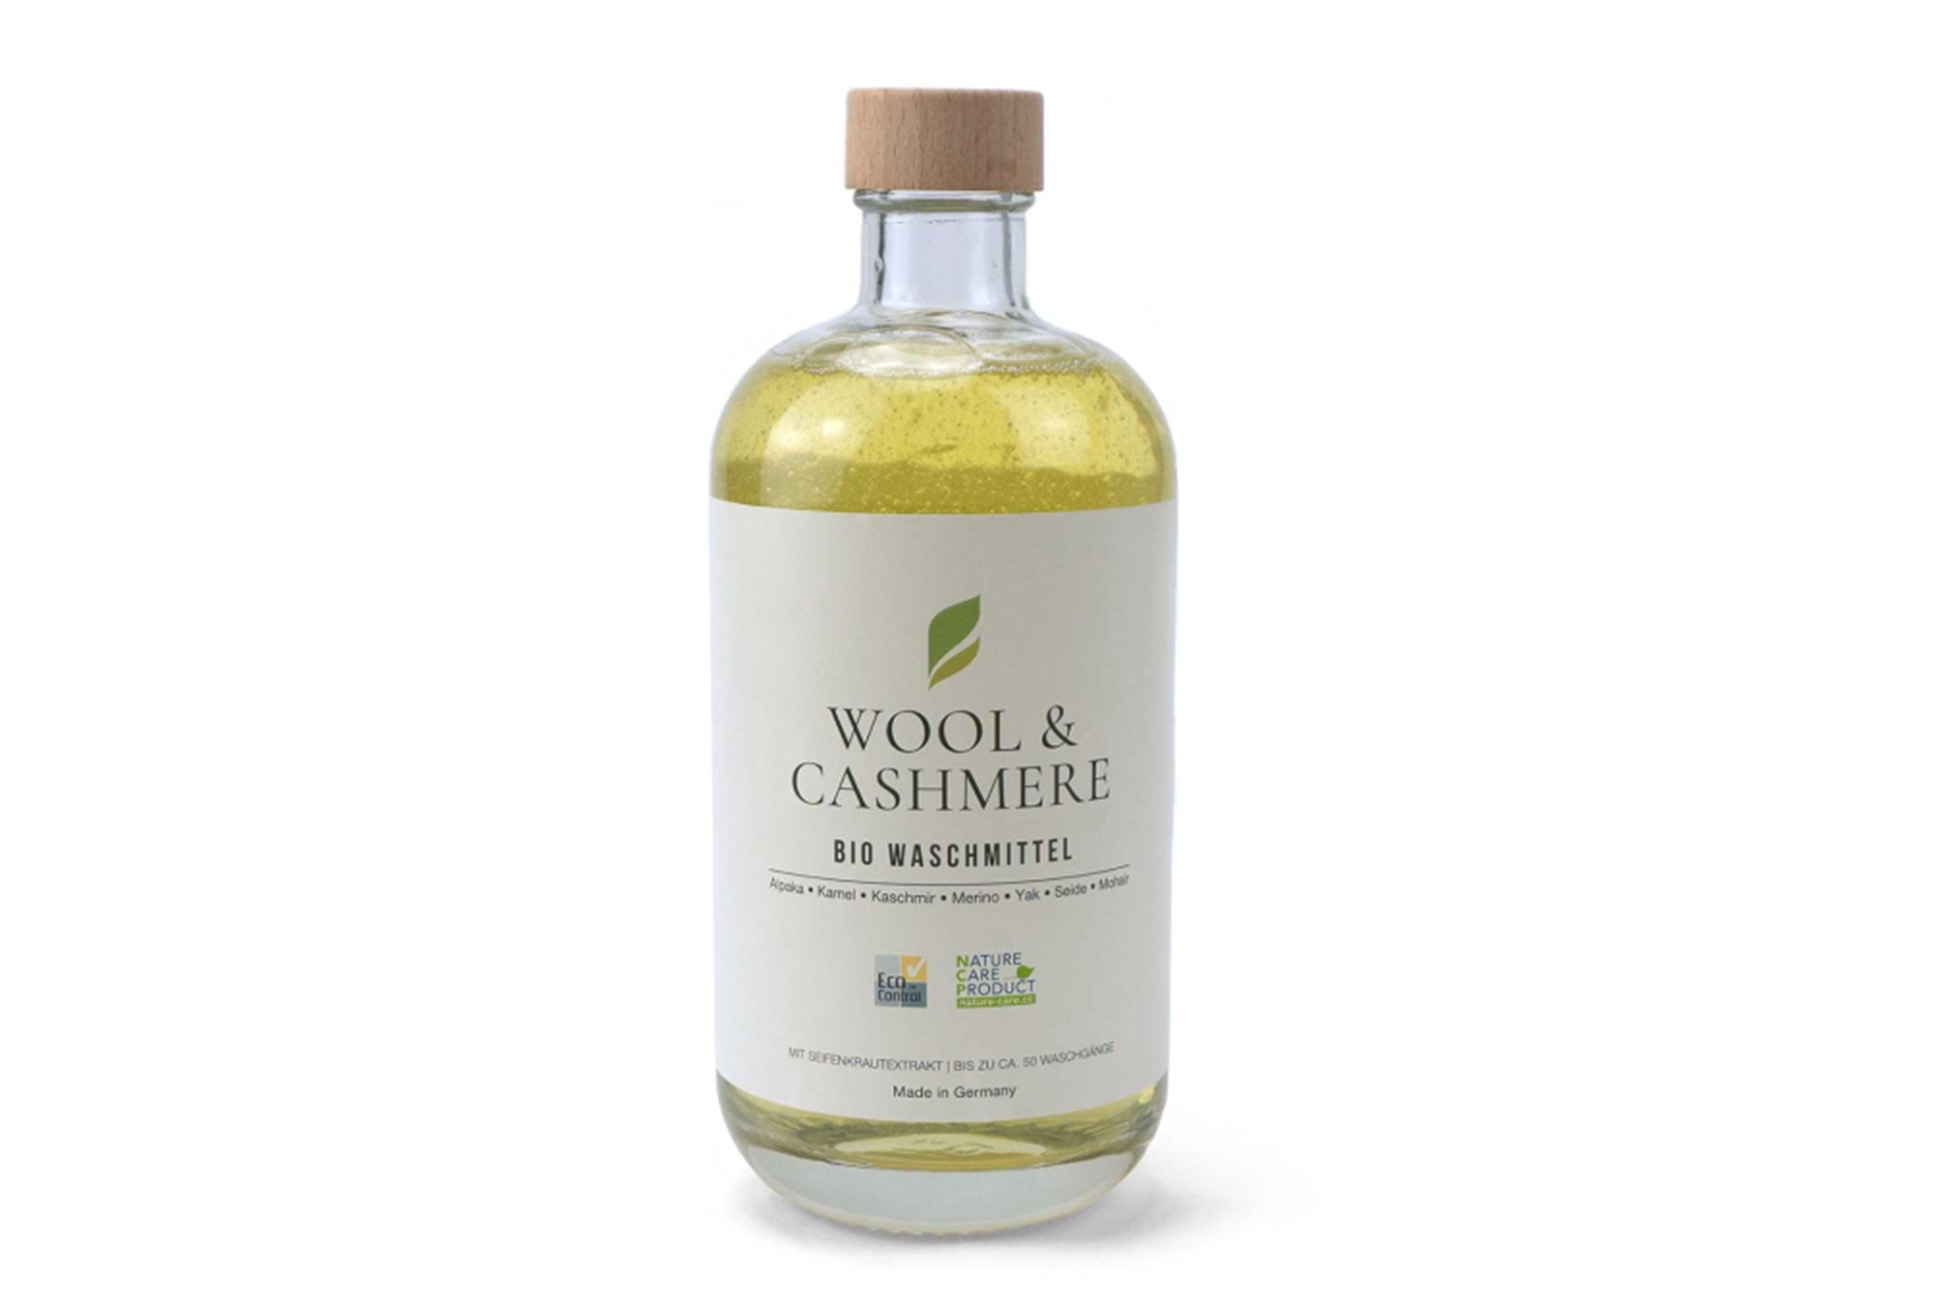 Wool & Cashmere Bio Waschmittel